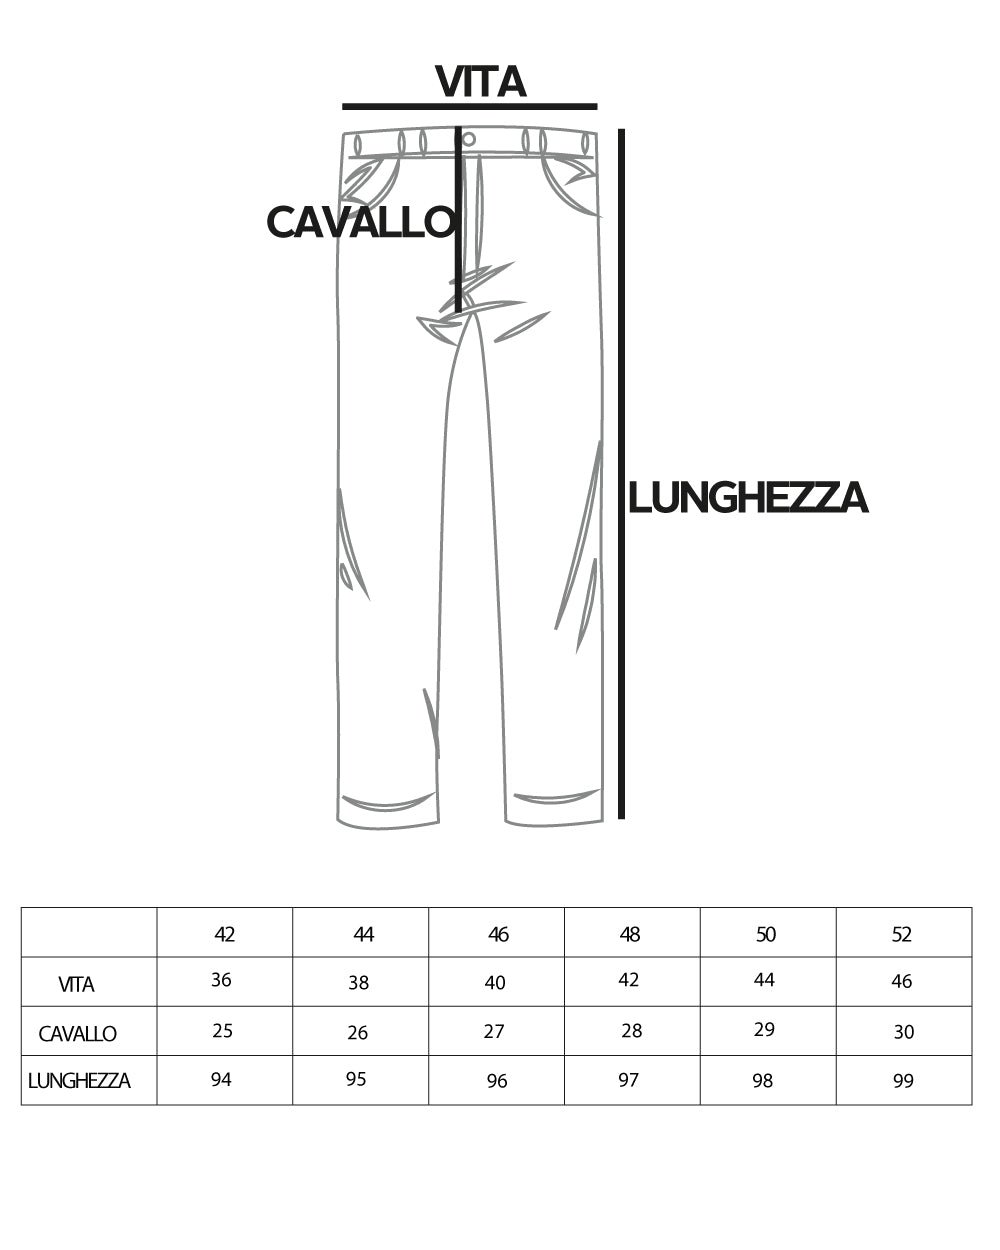 Pantaloni Uomo Cotone Tasca America Abbottonatura Allungata Capri Sartoriale Beige GIOSAL-P5689A